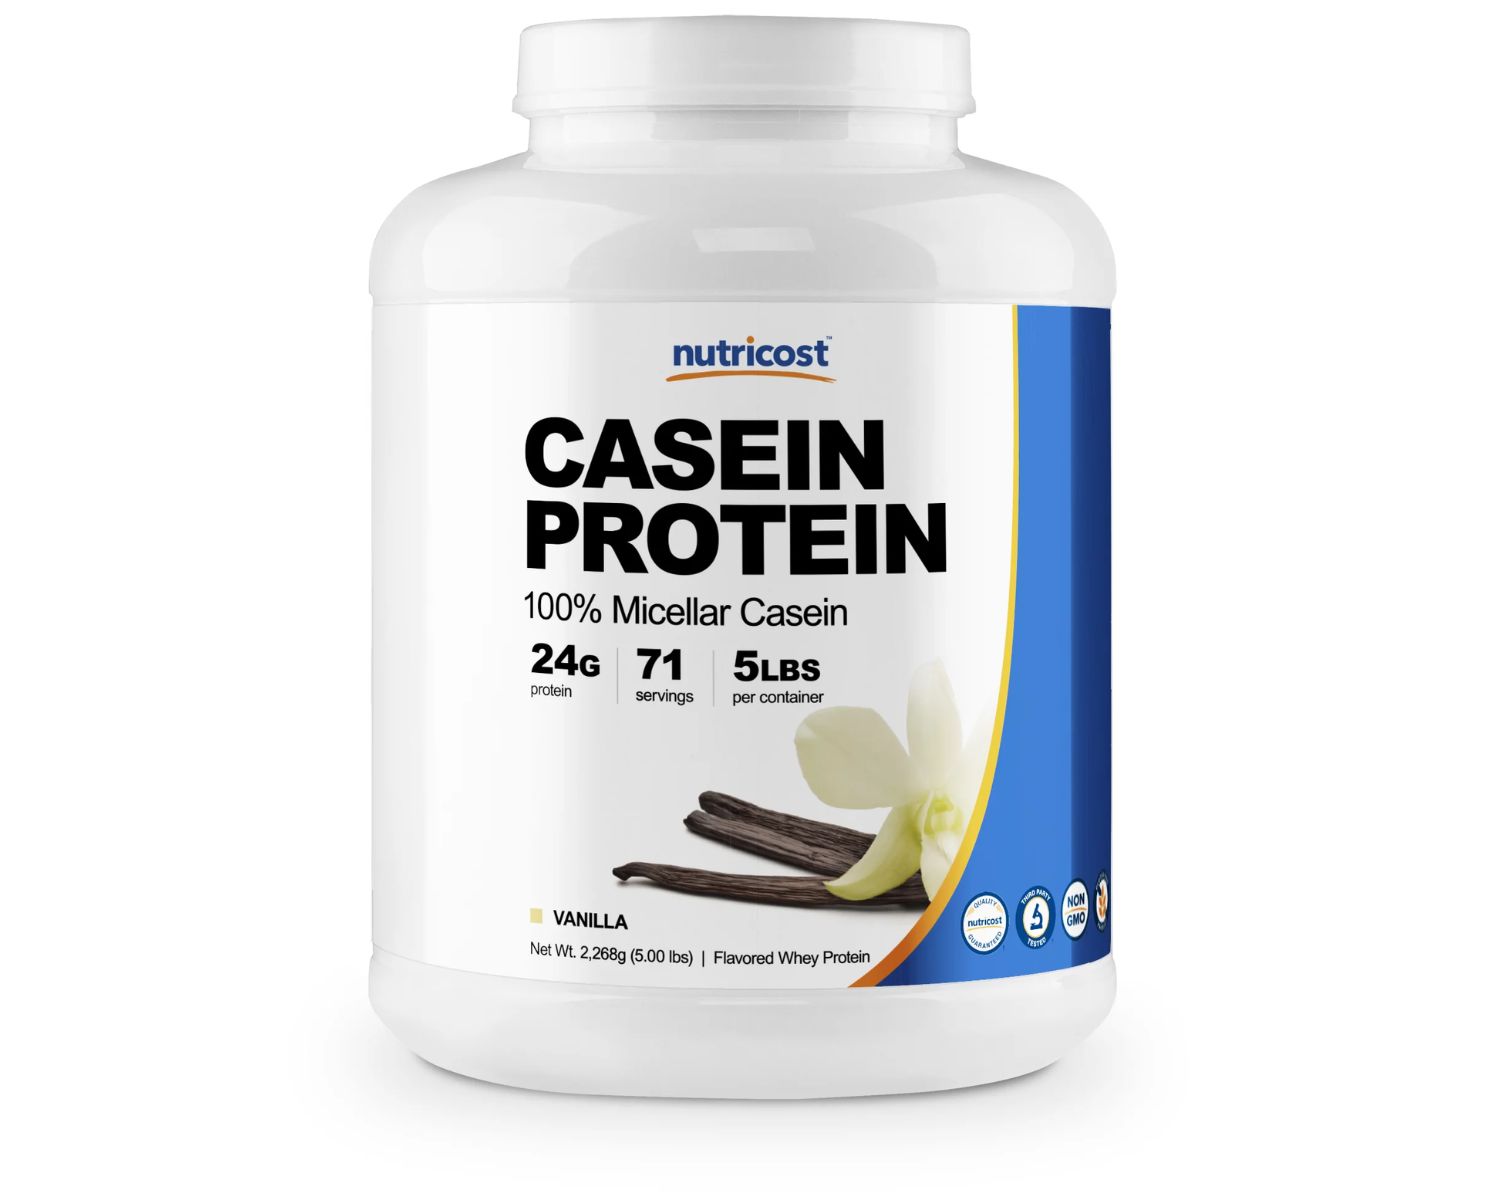 11-casein-protein-powder-nutrition-facts